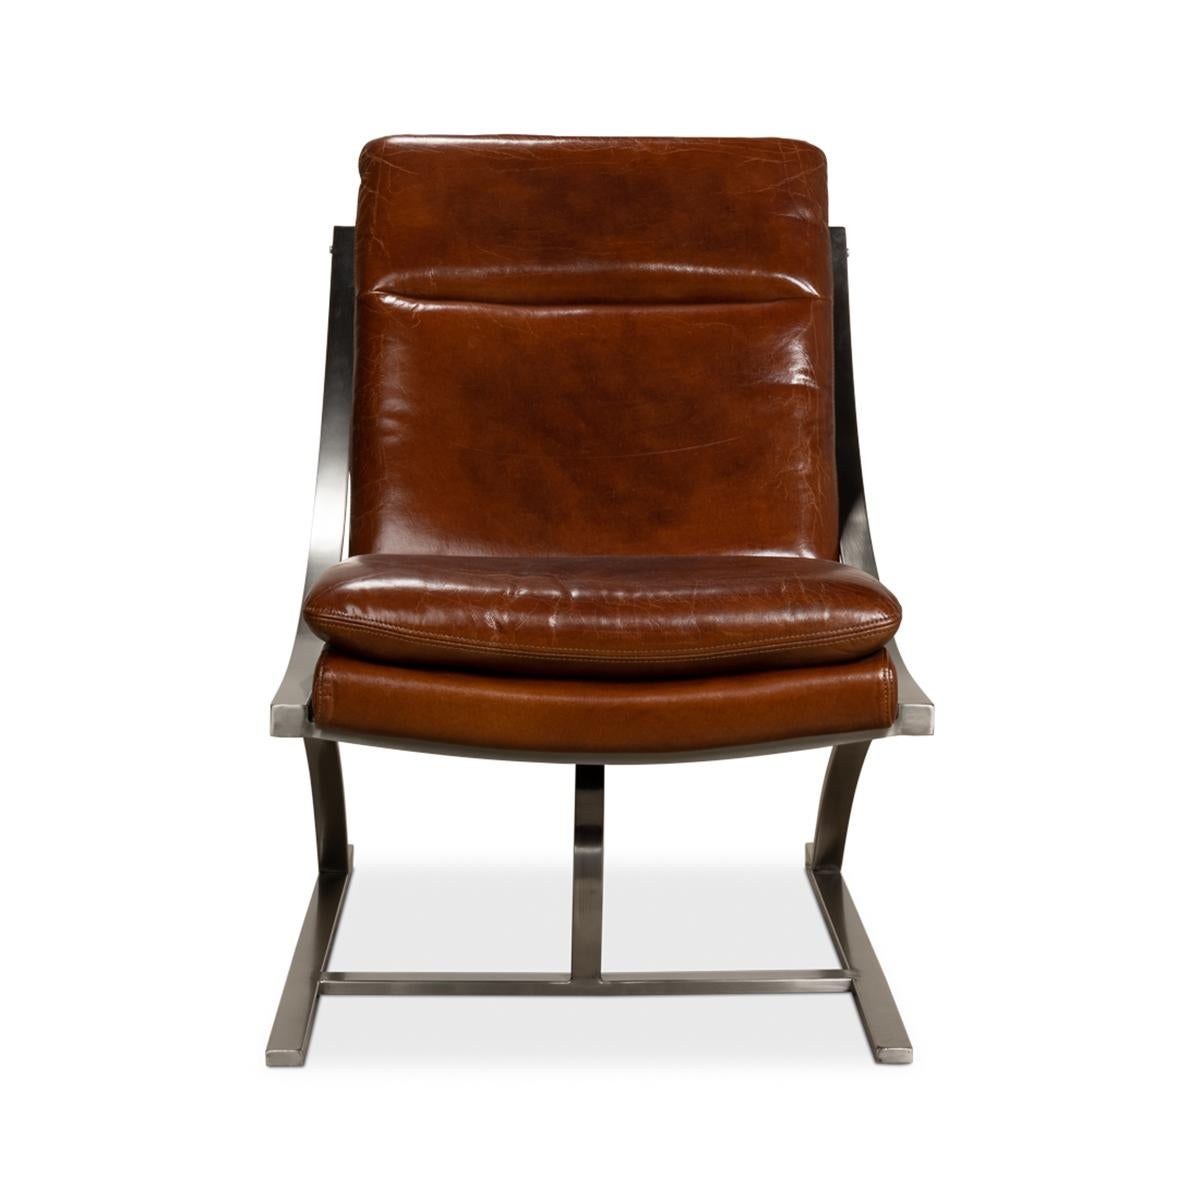 Chaise moderne en acier inoxydable et cuir, cuir brun chaud et luxueux avec une structure en acier inoxydable brossé et un design épuré et contemporain. 

Fabriqué en cuir aniline pur de qualité supérieure dans la couleur de cuir 